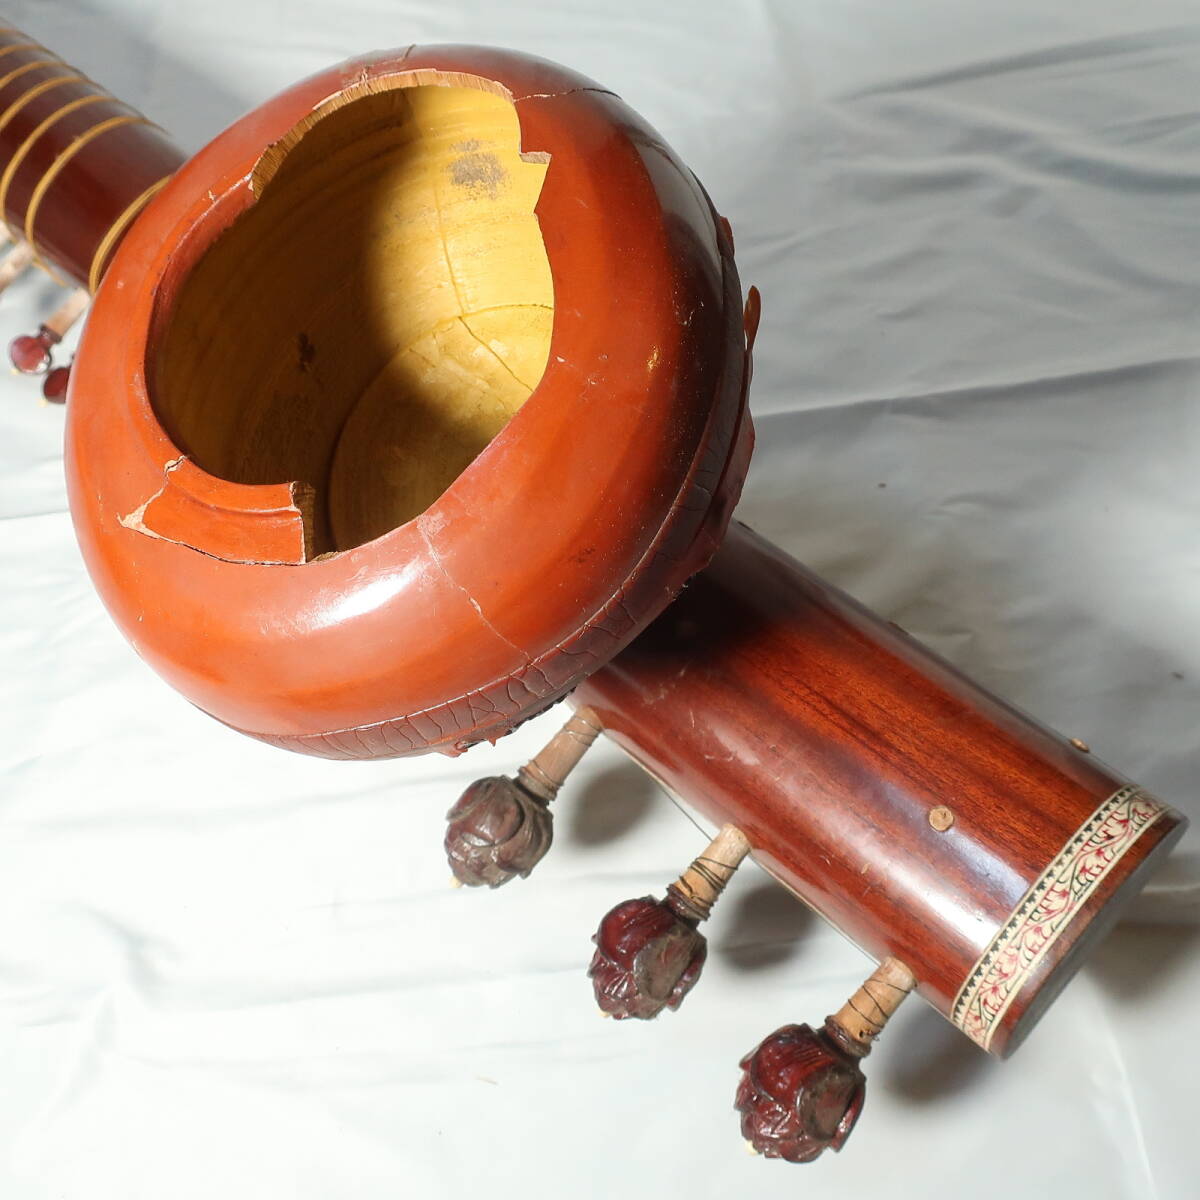 シタール ハードケース付 インド 民族楽器 全長約124cm 装飾バインディング 木彫り植物柄模様ボディ 楽器/220サイズ_画像9